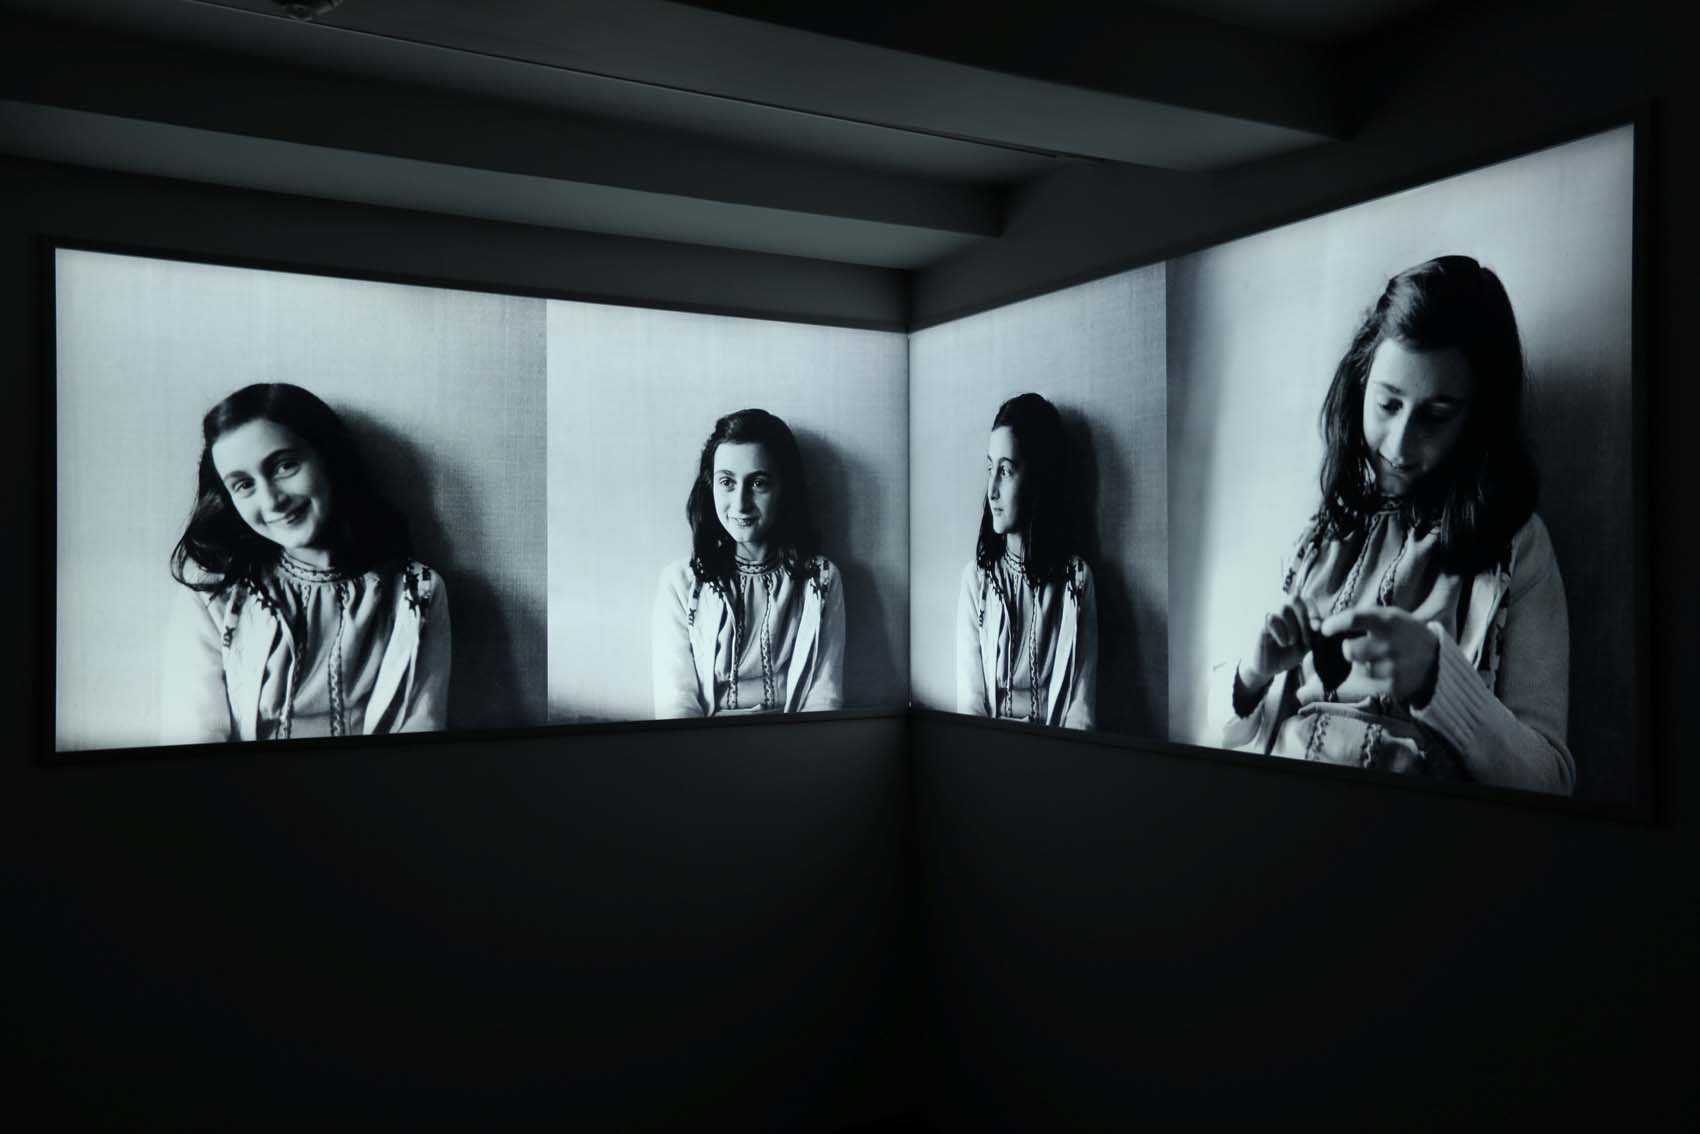 El museo Ana Frank, renovado para adaptarse a la nueva generación (Fotos)